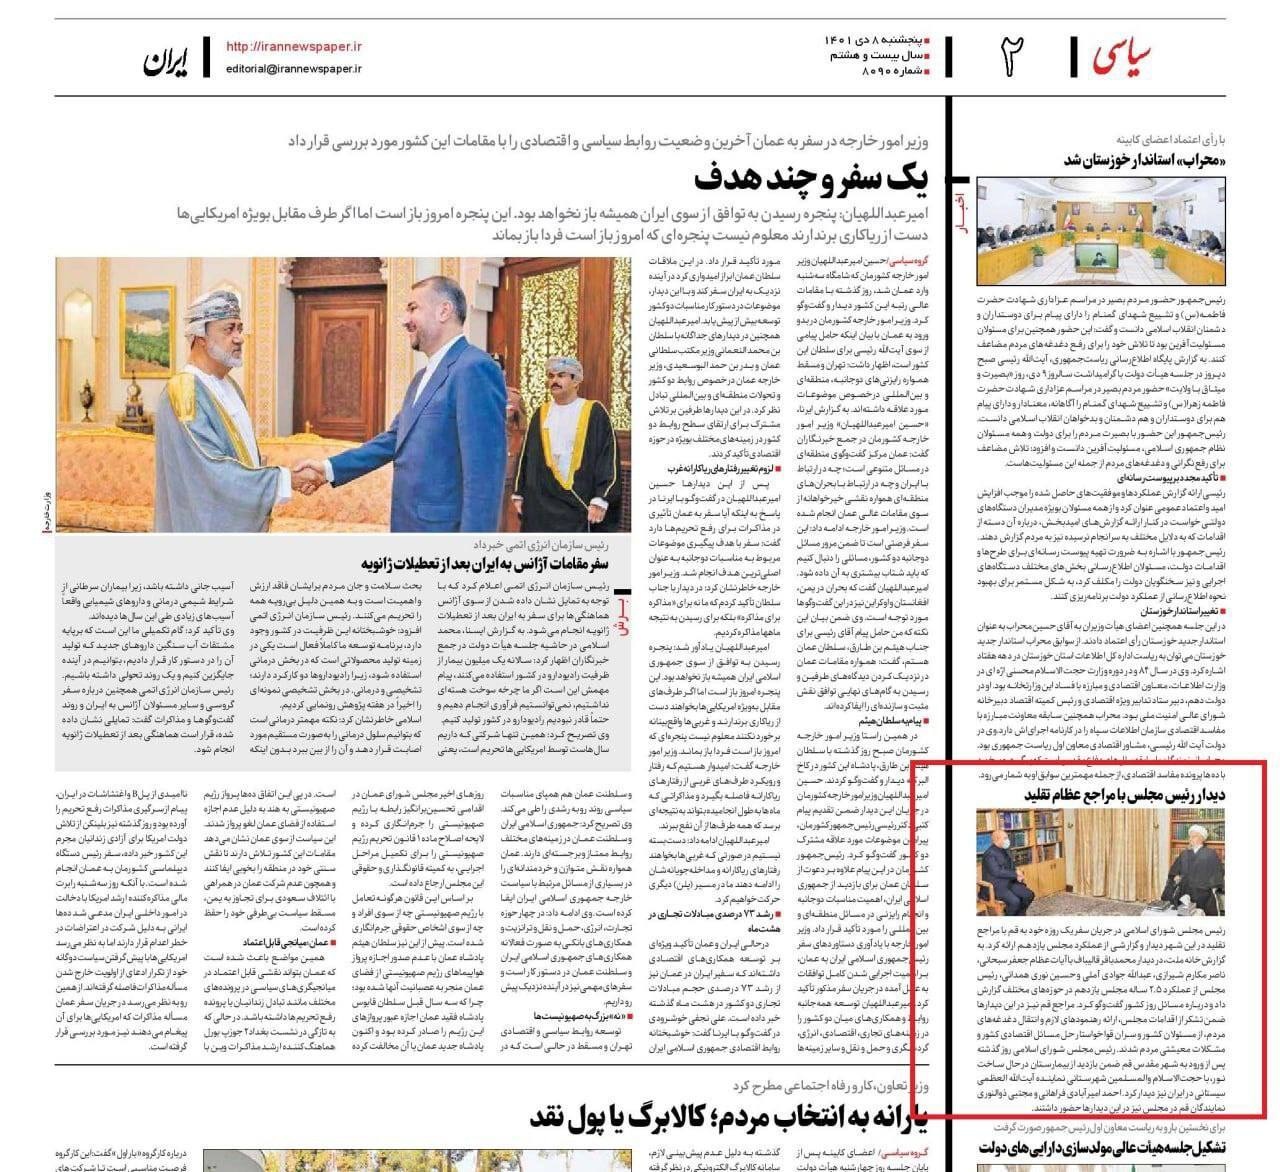 سانسور انتقادات توسط روزنامه ایران